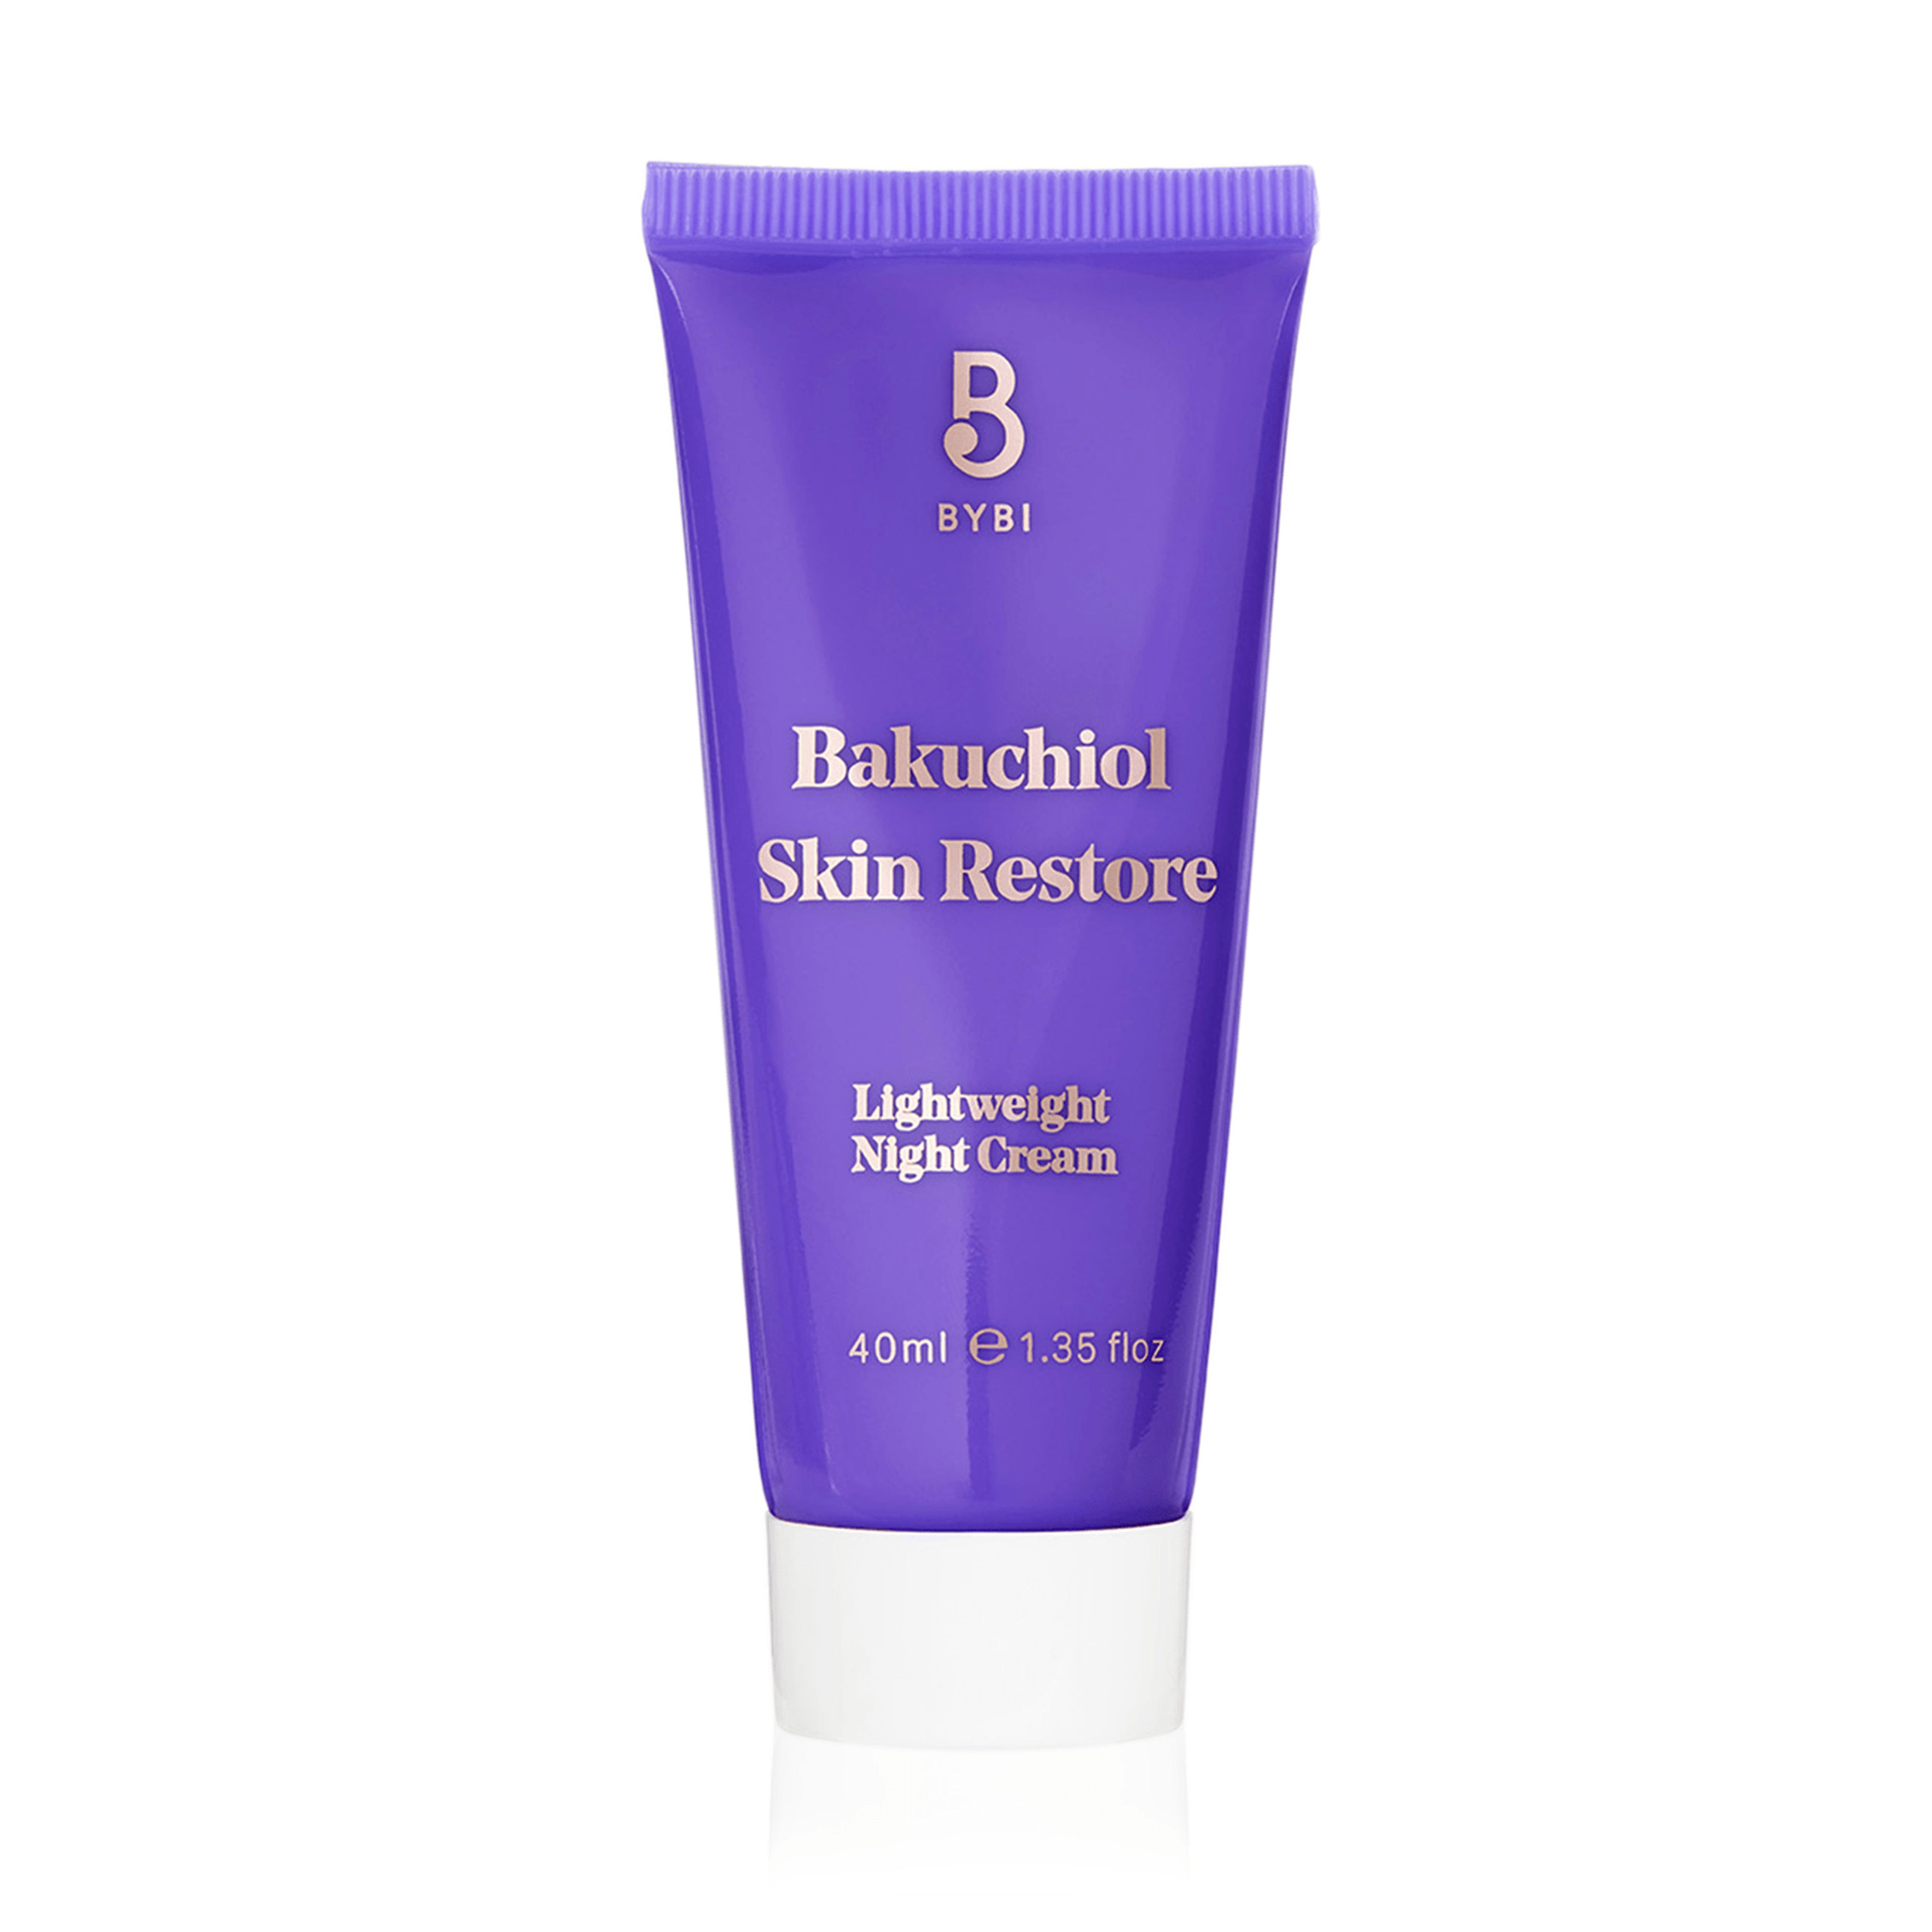 Bakuchiol Skin Restore 